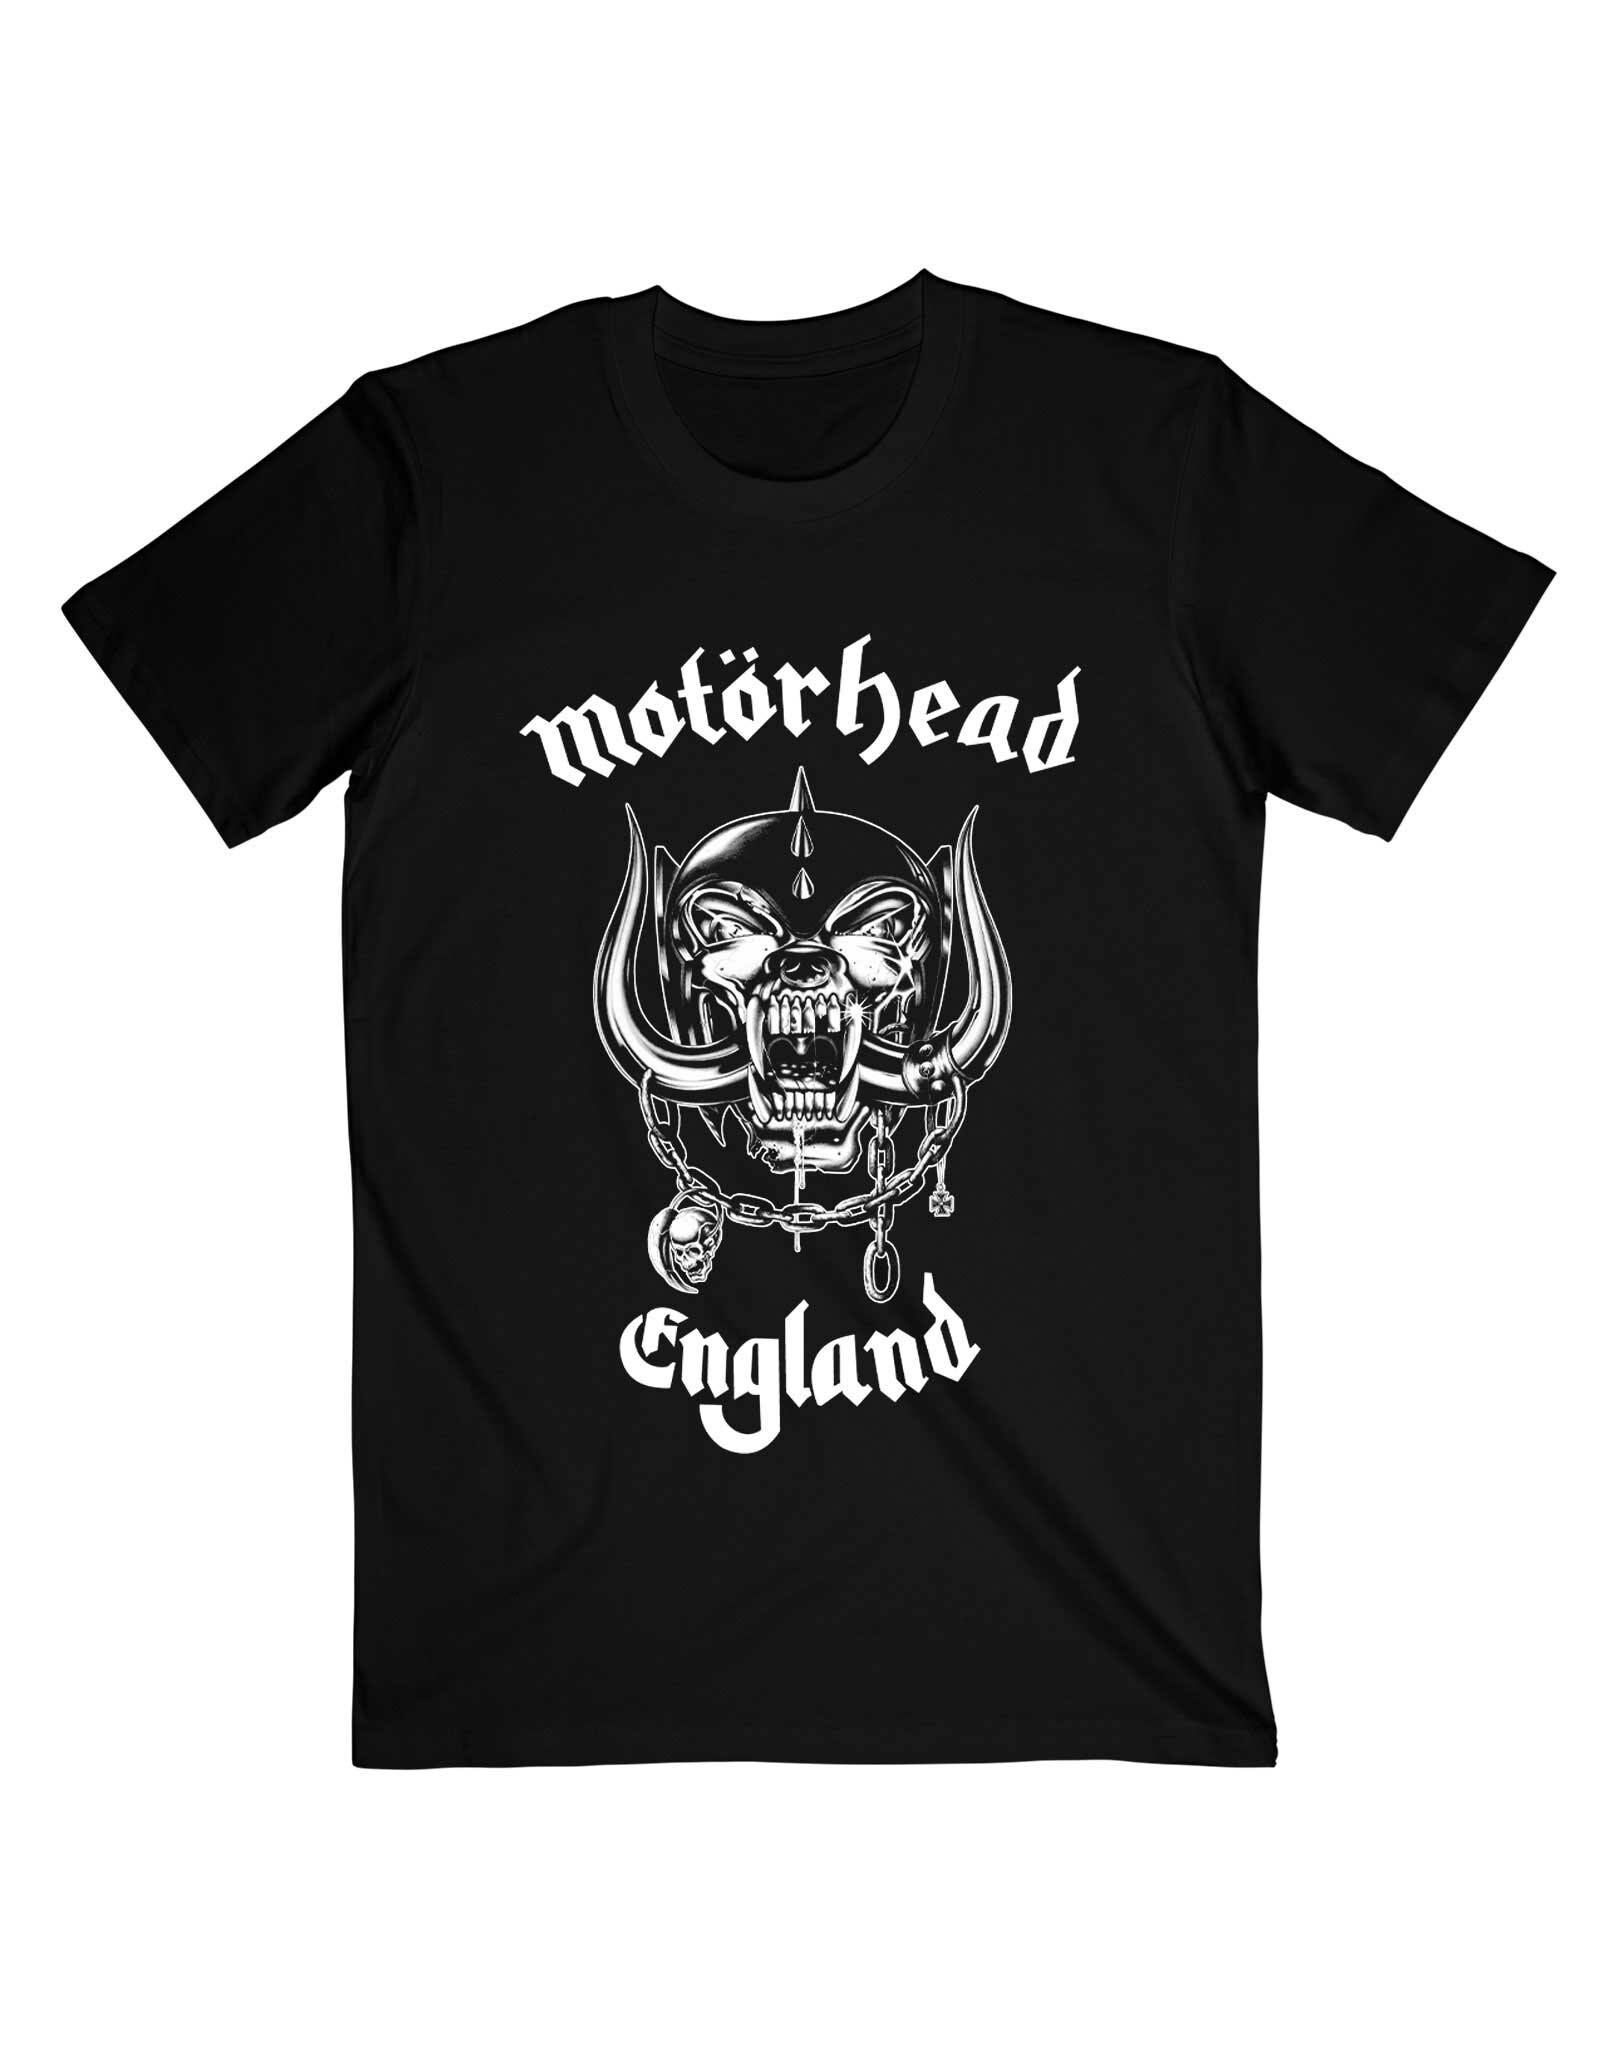 Motörhead / Classic Warpig England Tee